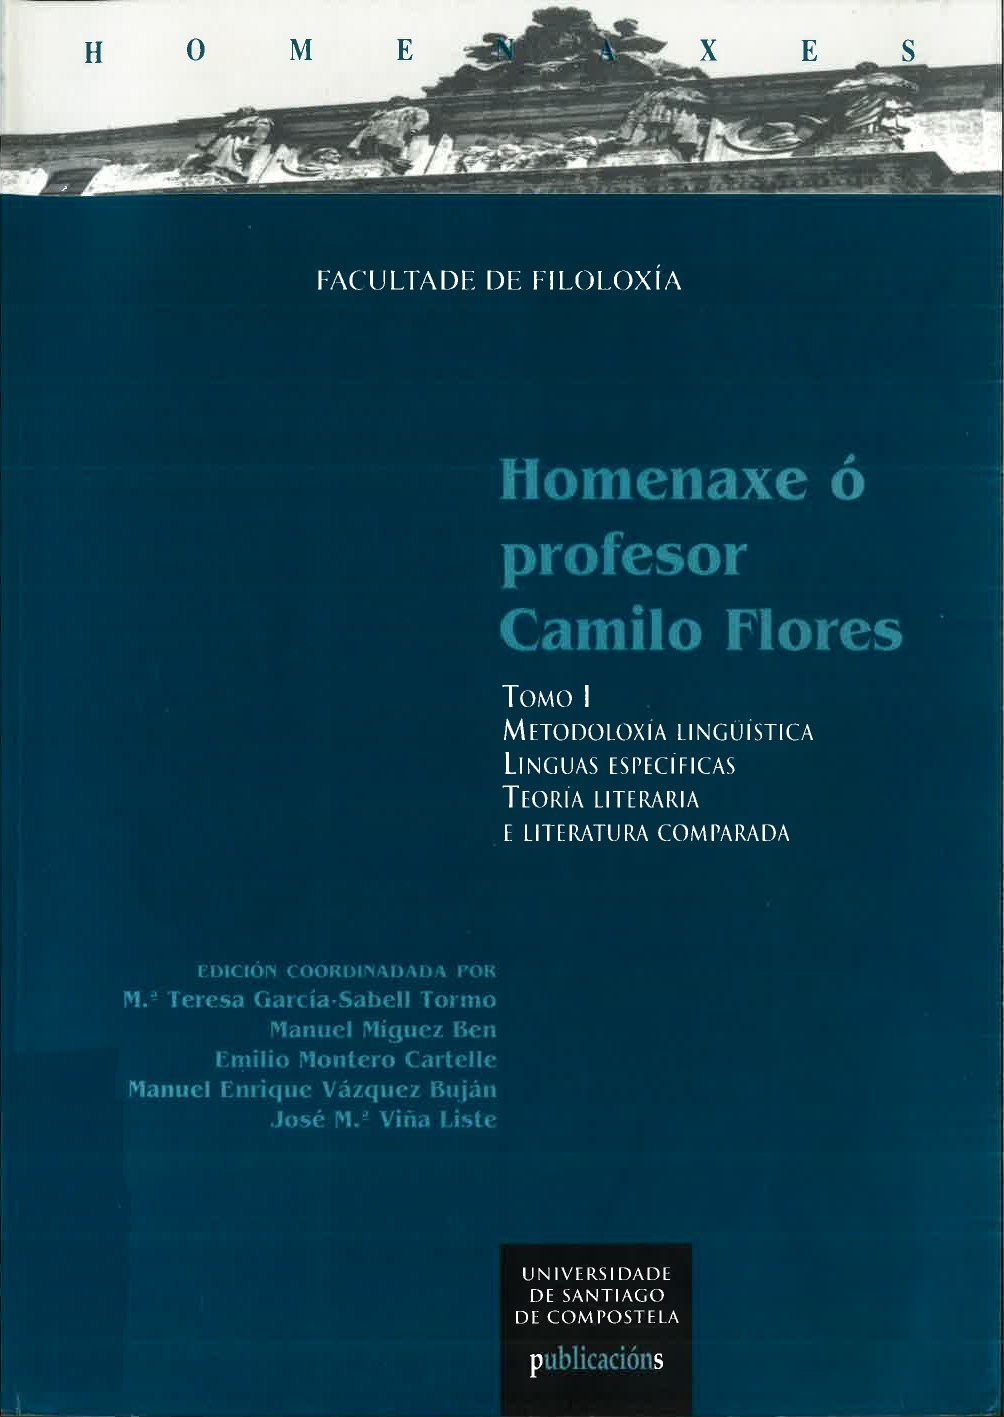 Imagen de portada del libro Homenaxe ó profesor Camilo Flores